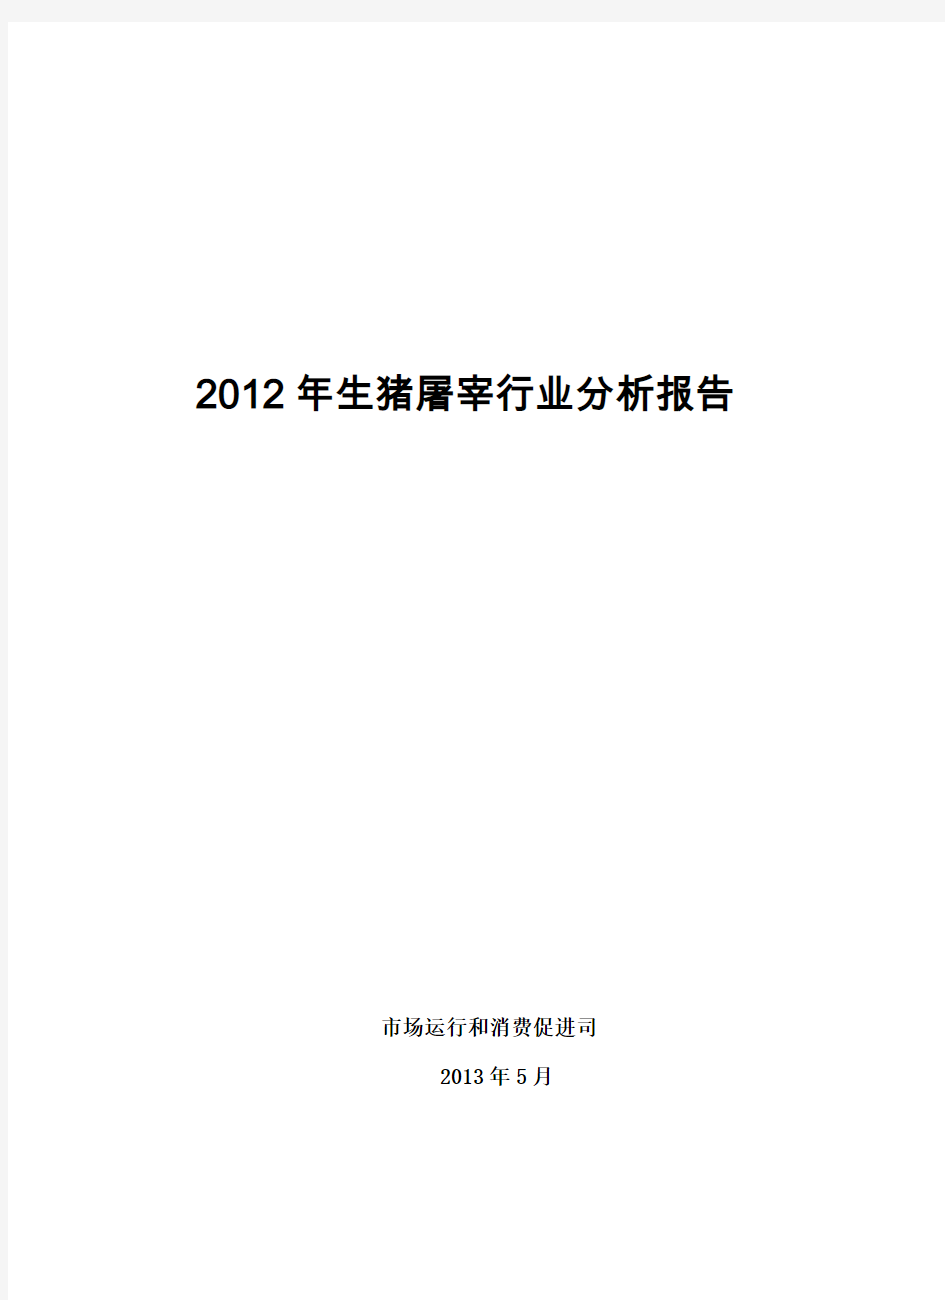 2012年生猪屠宰行业分析报告。